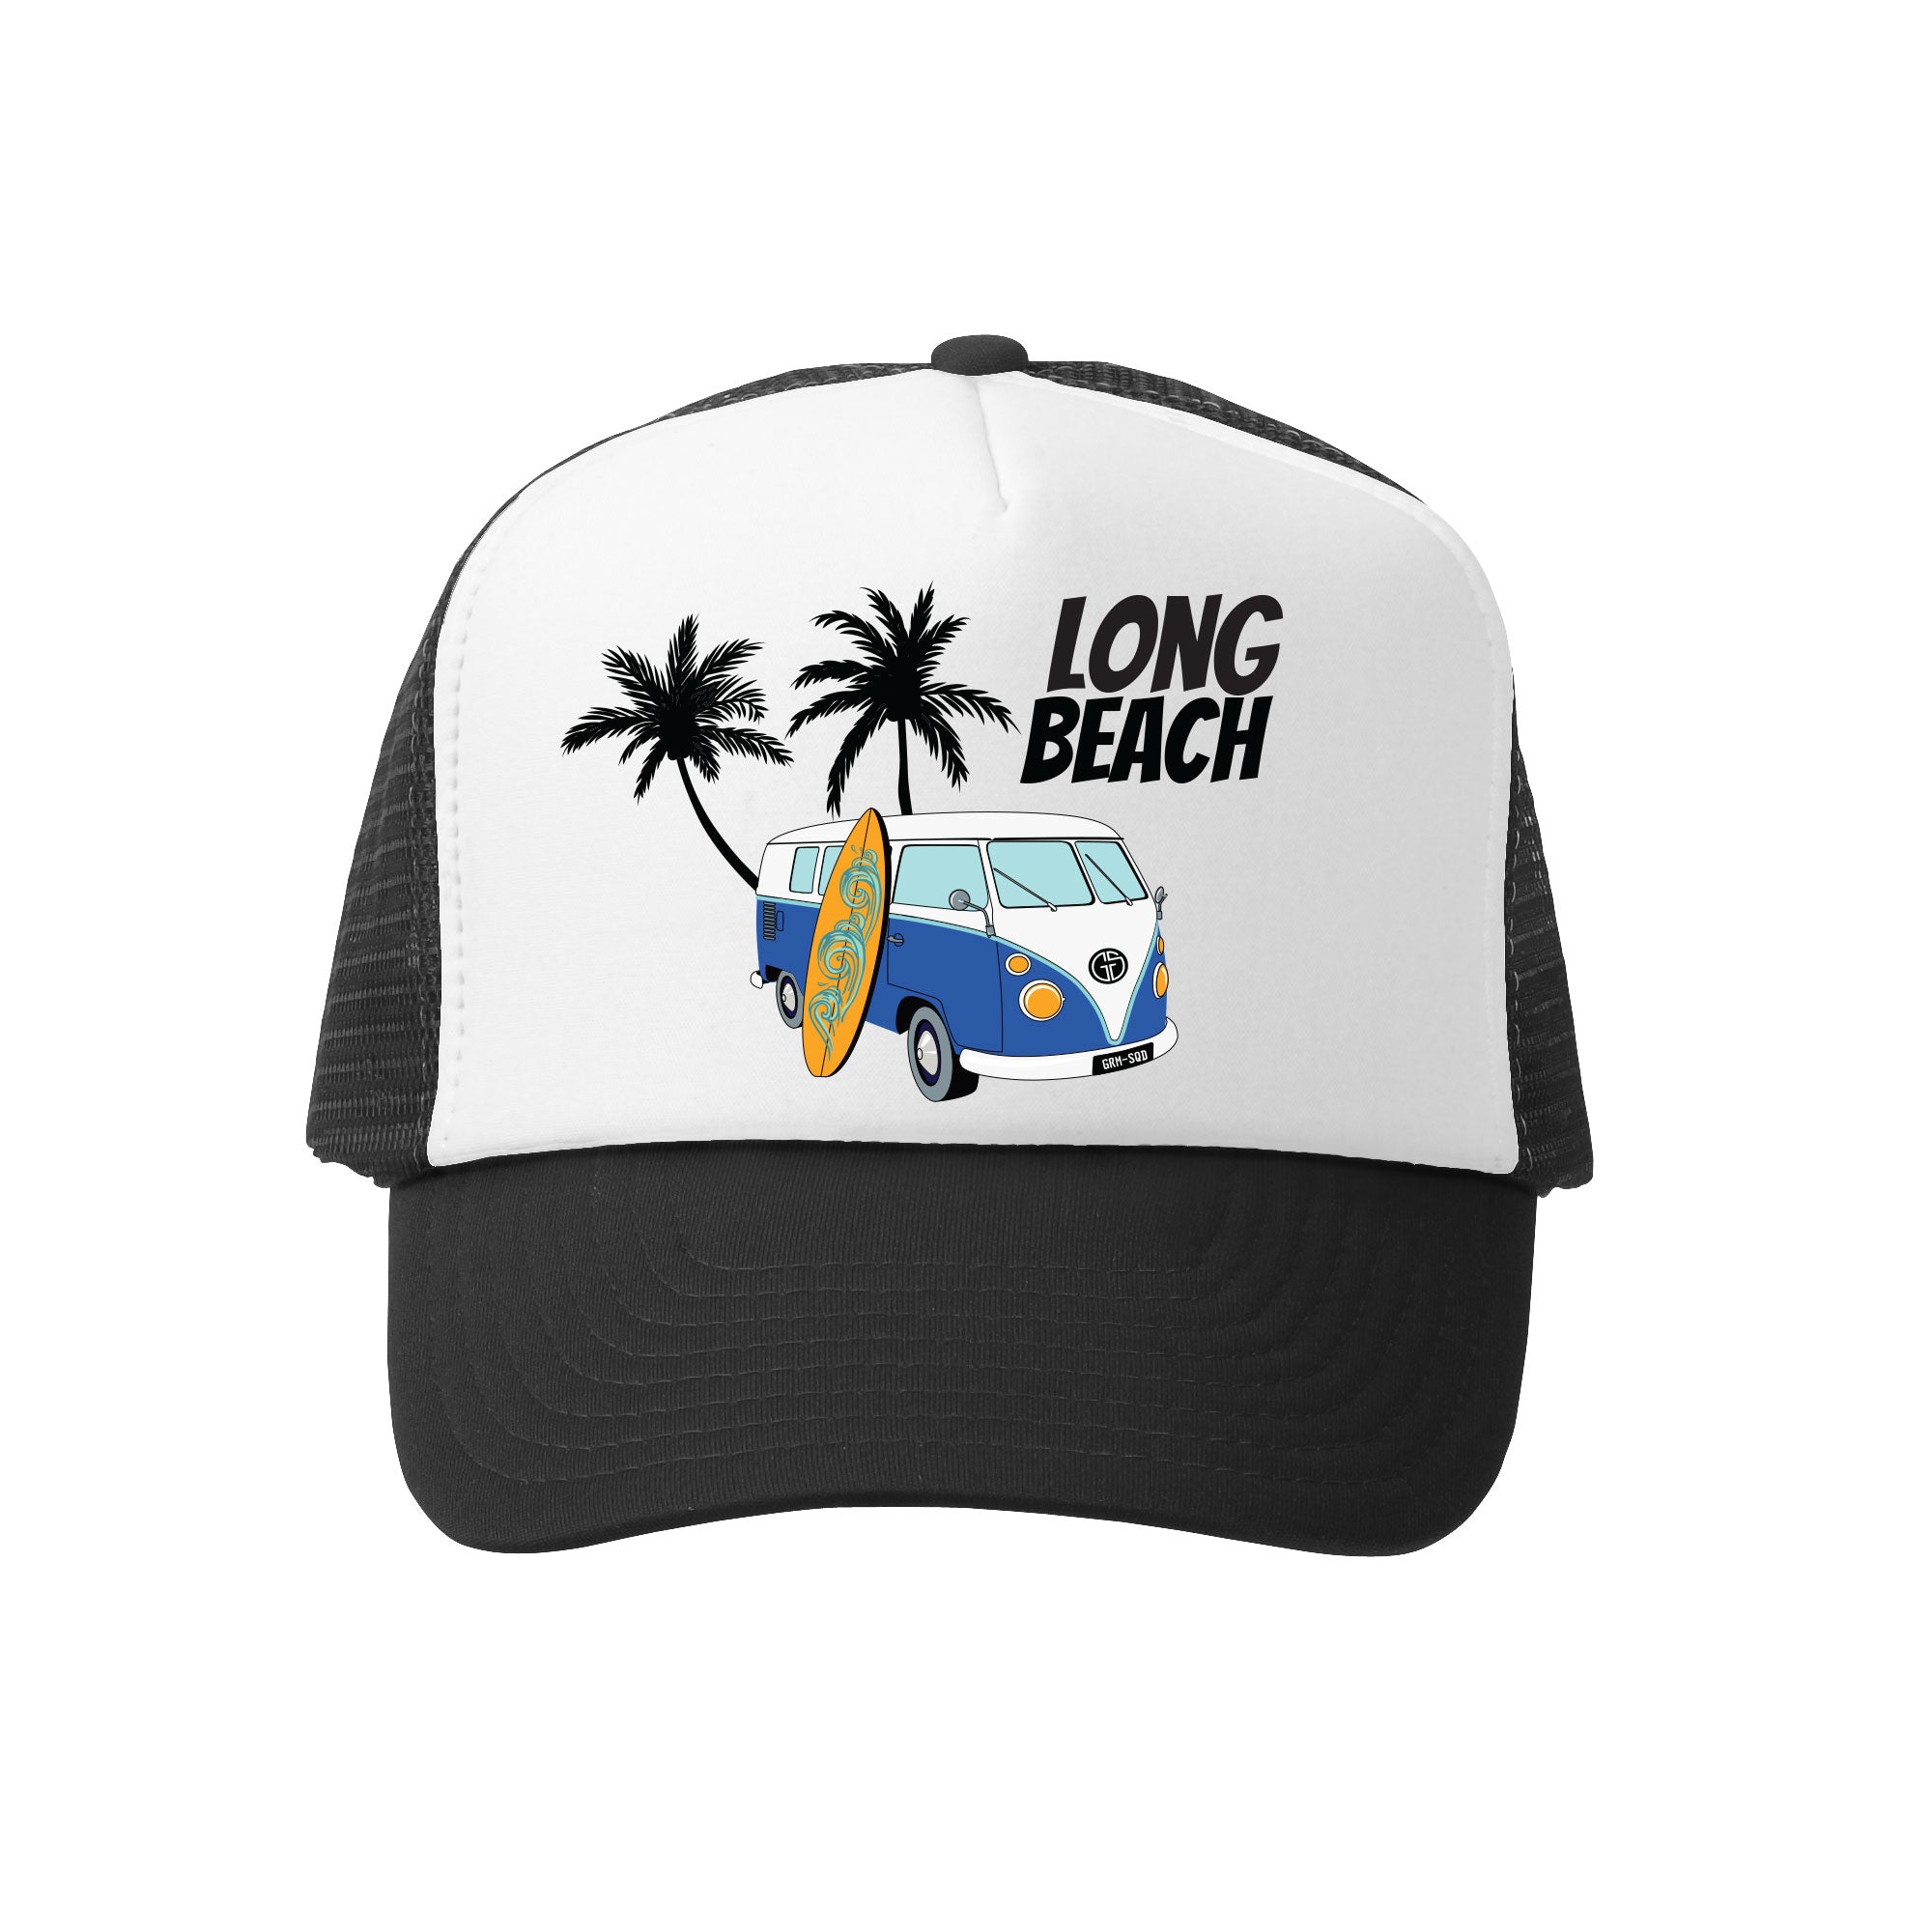 Grom Squad Soul Surfer Long Beach Trucker Hat in Black/White